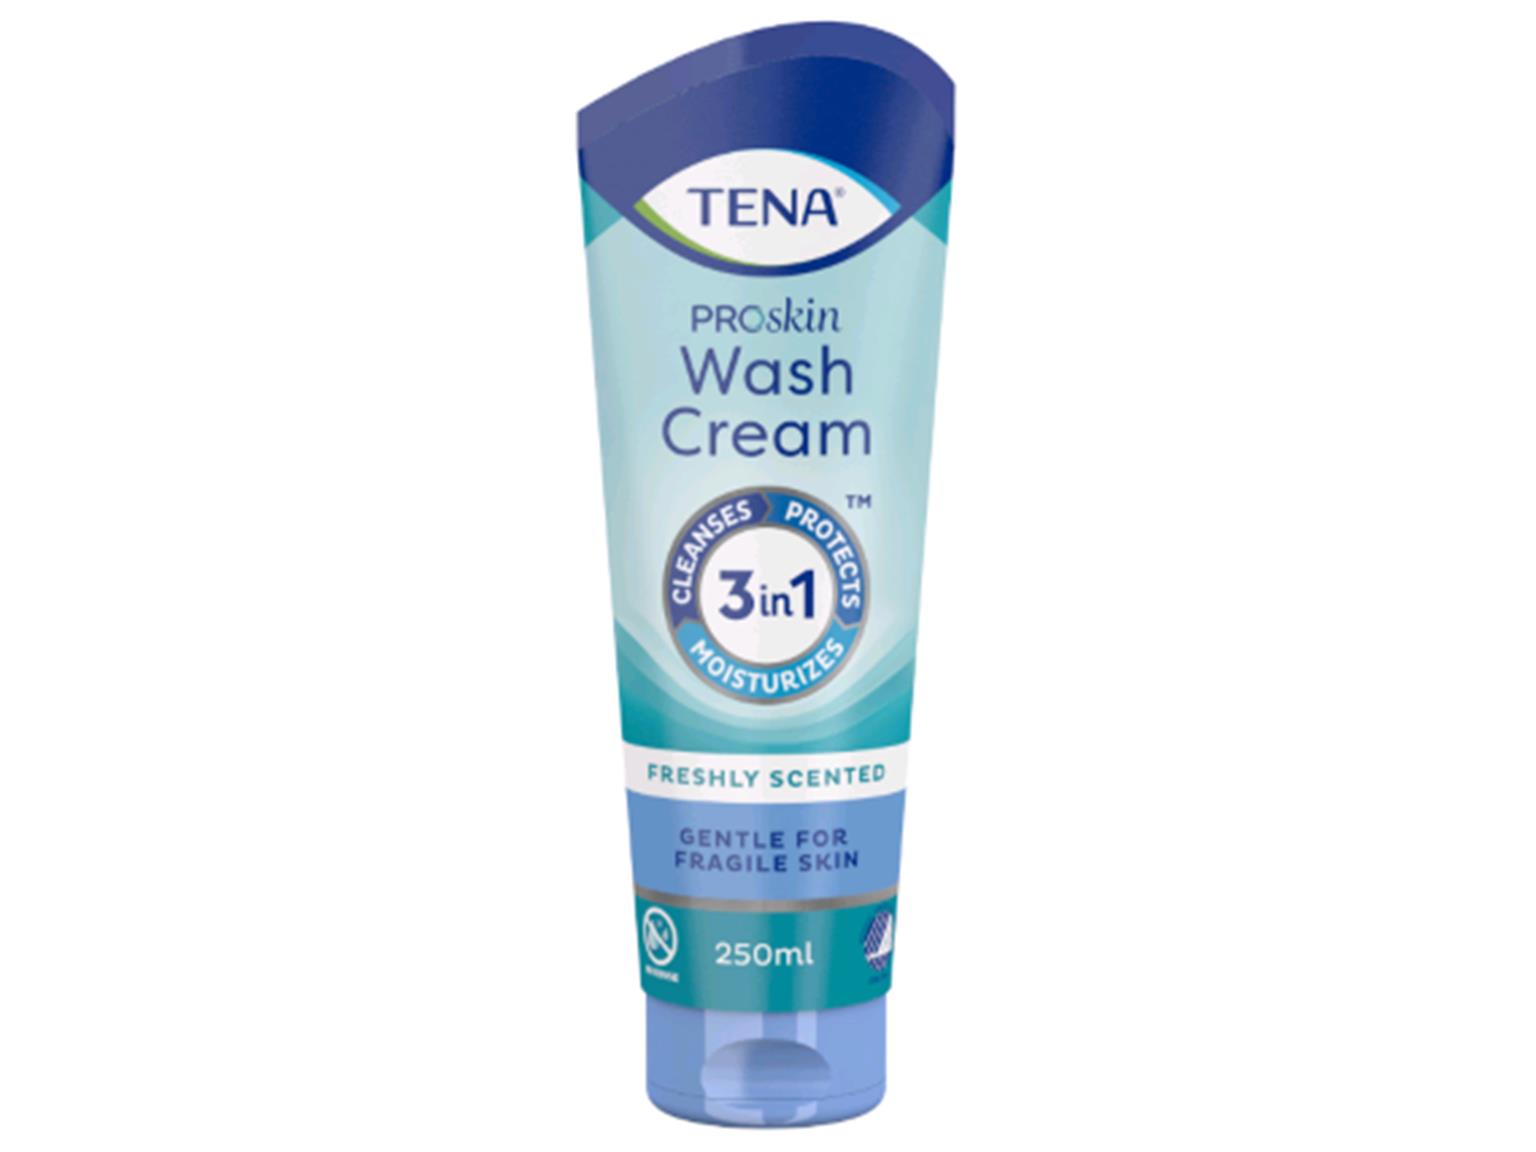 TENA Wash Cream - 250ml Flasche Reinigt, pfegt und schützt selbst sehr